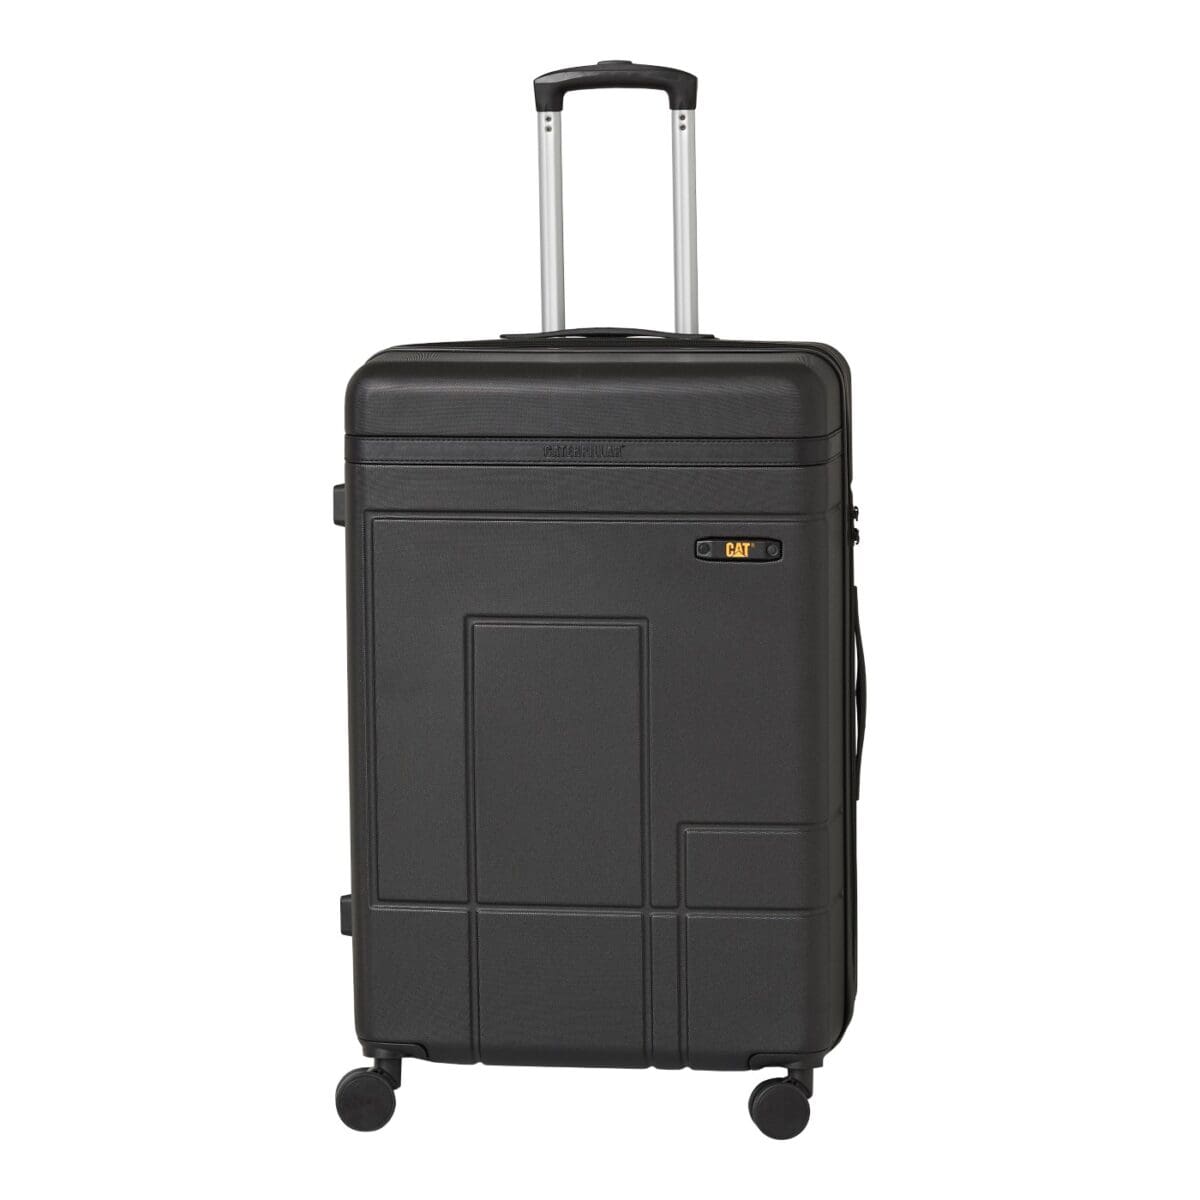 Βαλίτσα με διπλά ροδάκια από abs υλικό σε μαύρο χρώμα